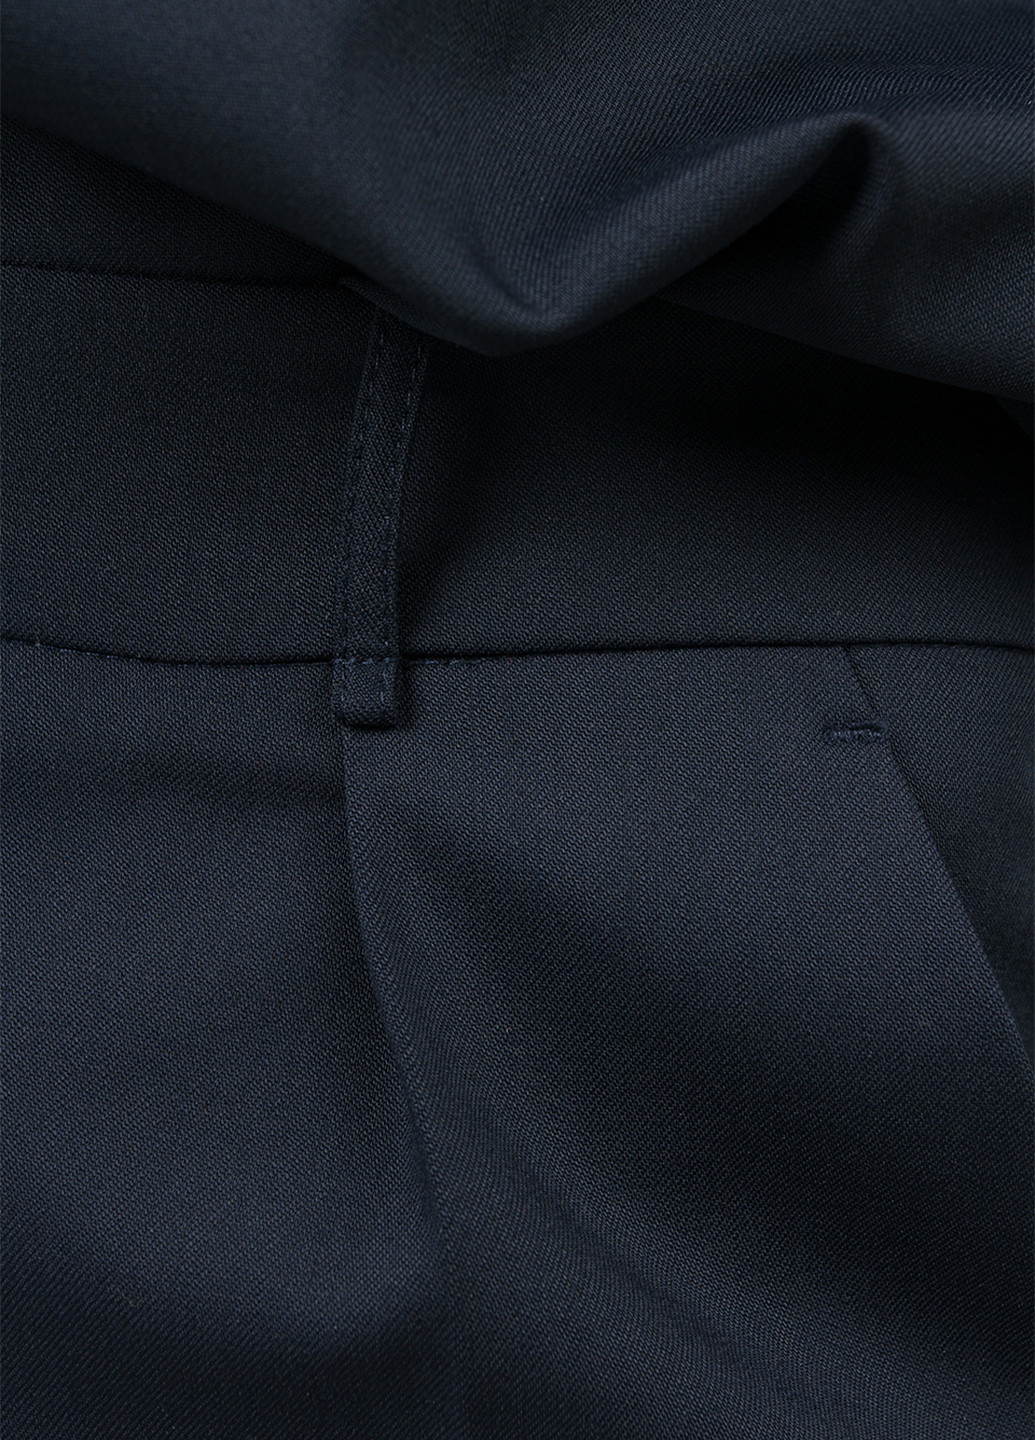 Комбинезон BGL комбинезон-брюки однотонный тёмно-синий деловой шерсть